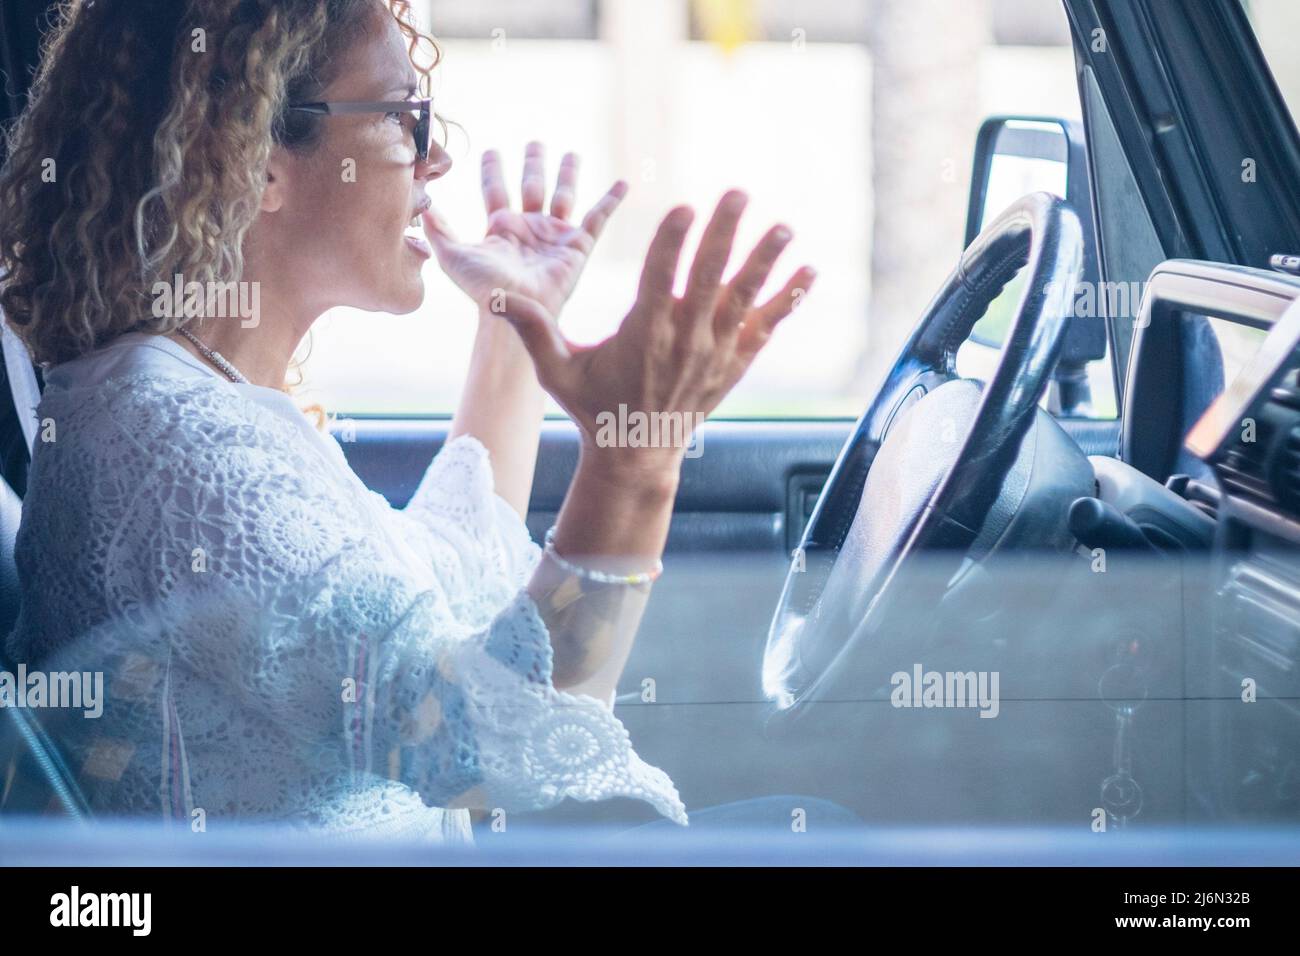 Una mujer conductor enojada grita en el tráfico - personas adultas estresadas dentro del vehículo - manos fuera del concepto de seguridad de las ruedas de dirección. Foto de stock